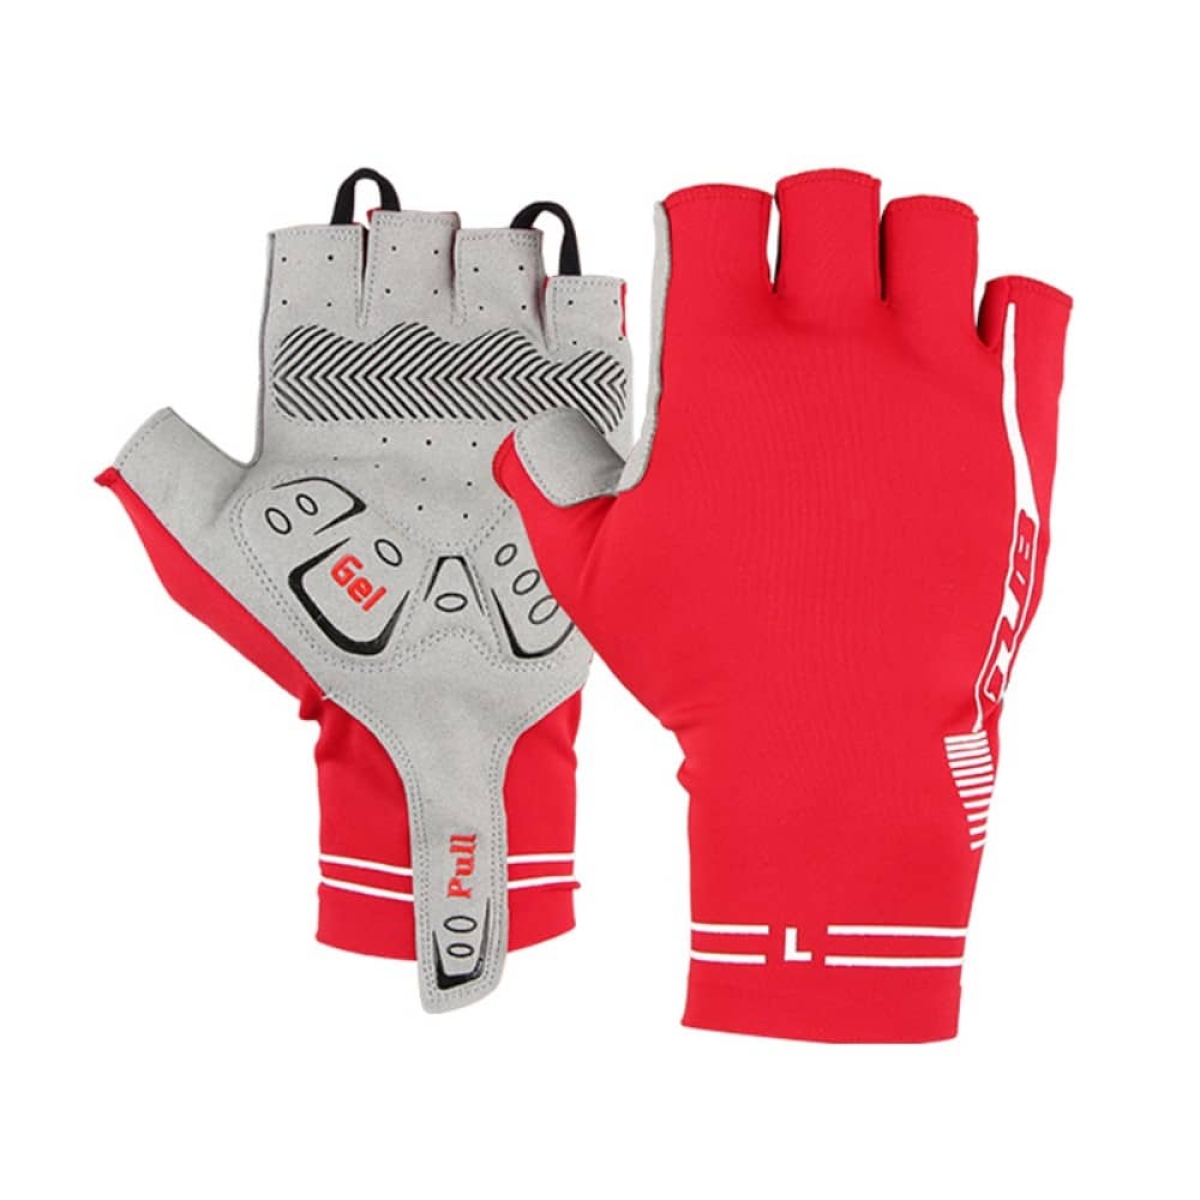 Γάντια κοντά GUB S032 αντικραδασμικά και αντιολισθητικά σε μέγεθος (XL) - Κόκκινα